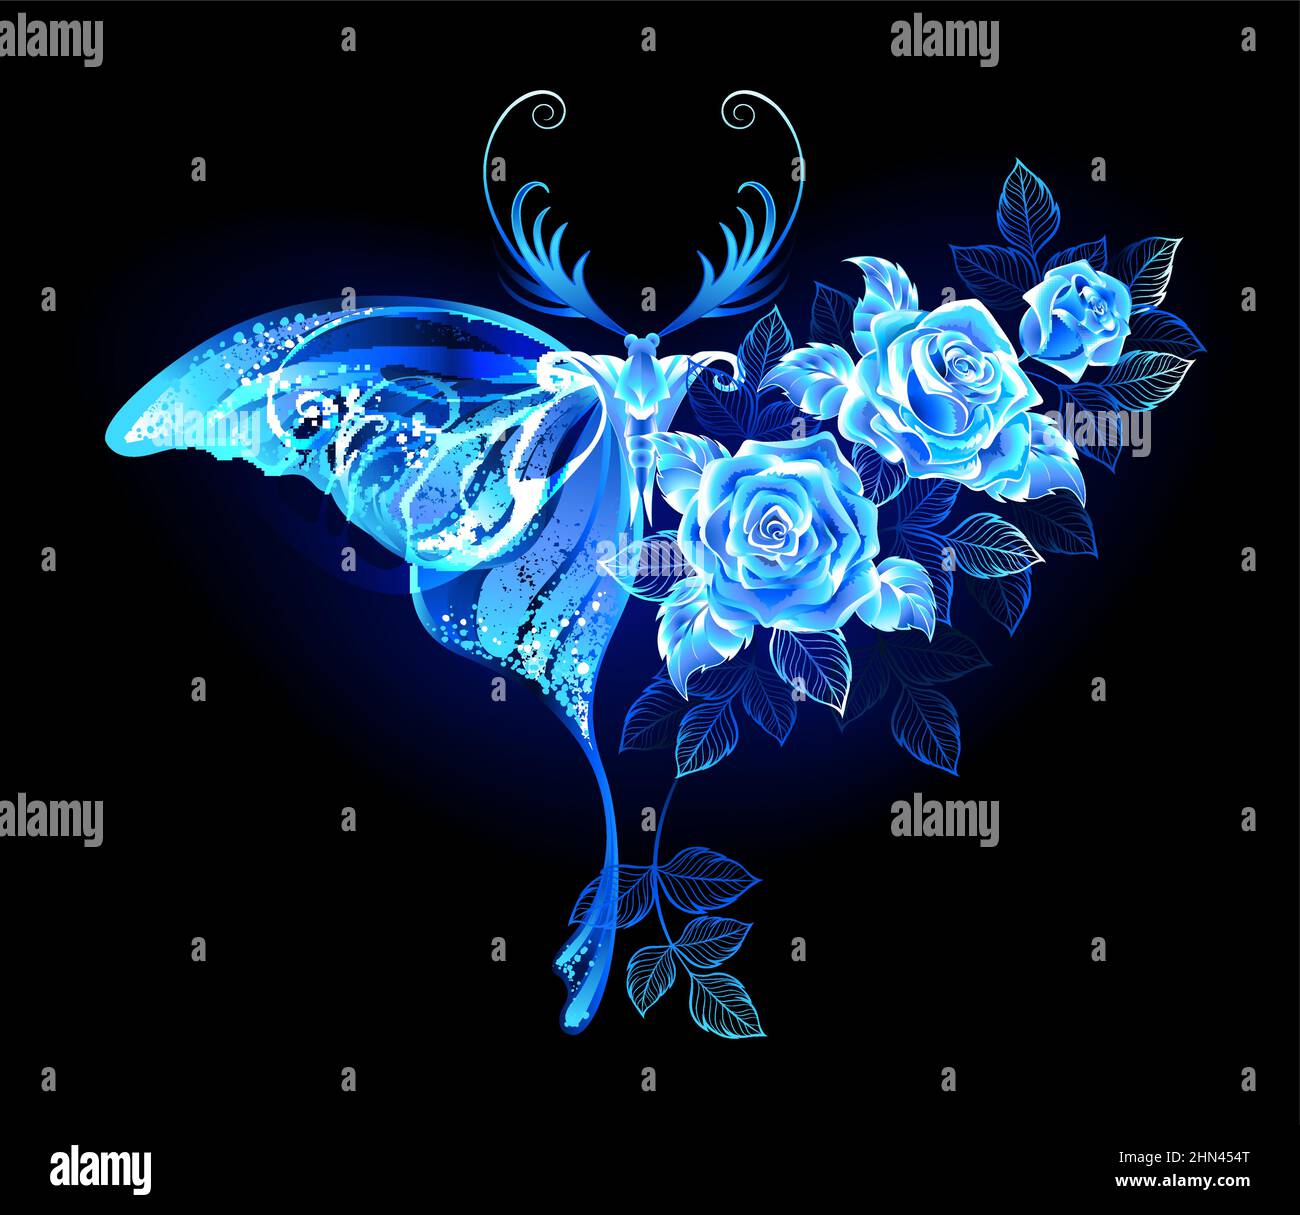 Leuchtend, magisch, blau, blumig, Nachtfalter mit Flügel verziert mit blauen, blühenden, luxuriösen, glühenden Rosen auf schwarzem Hintergrund. Stock Vektor